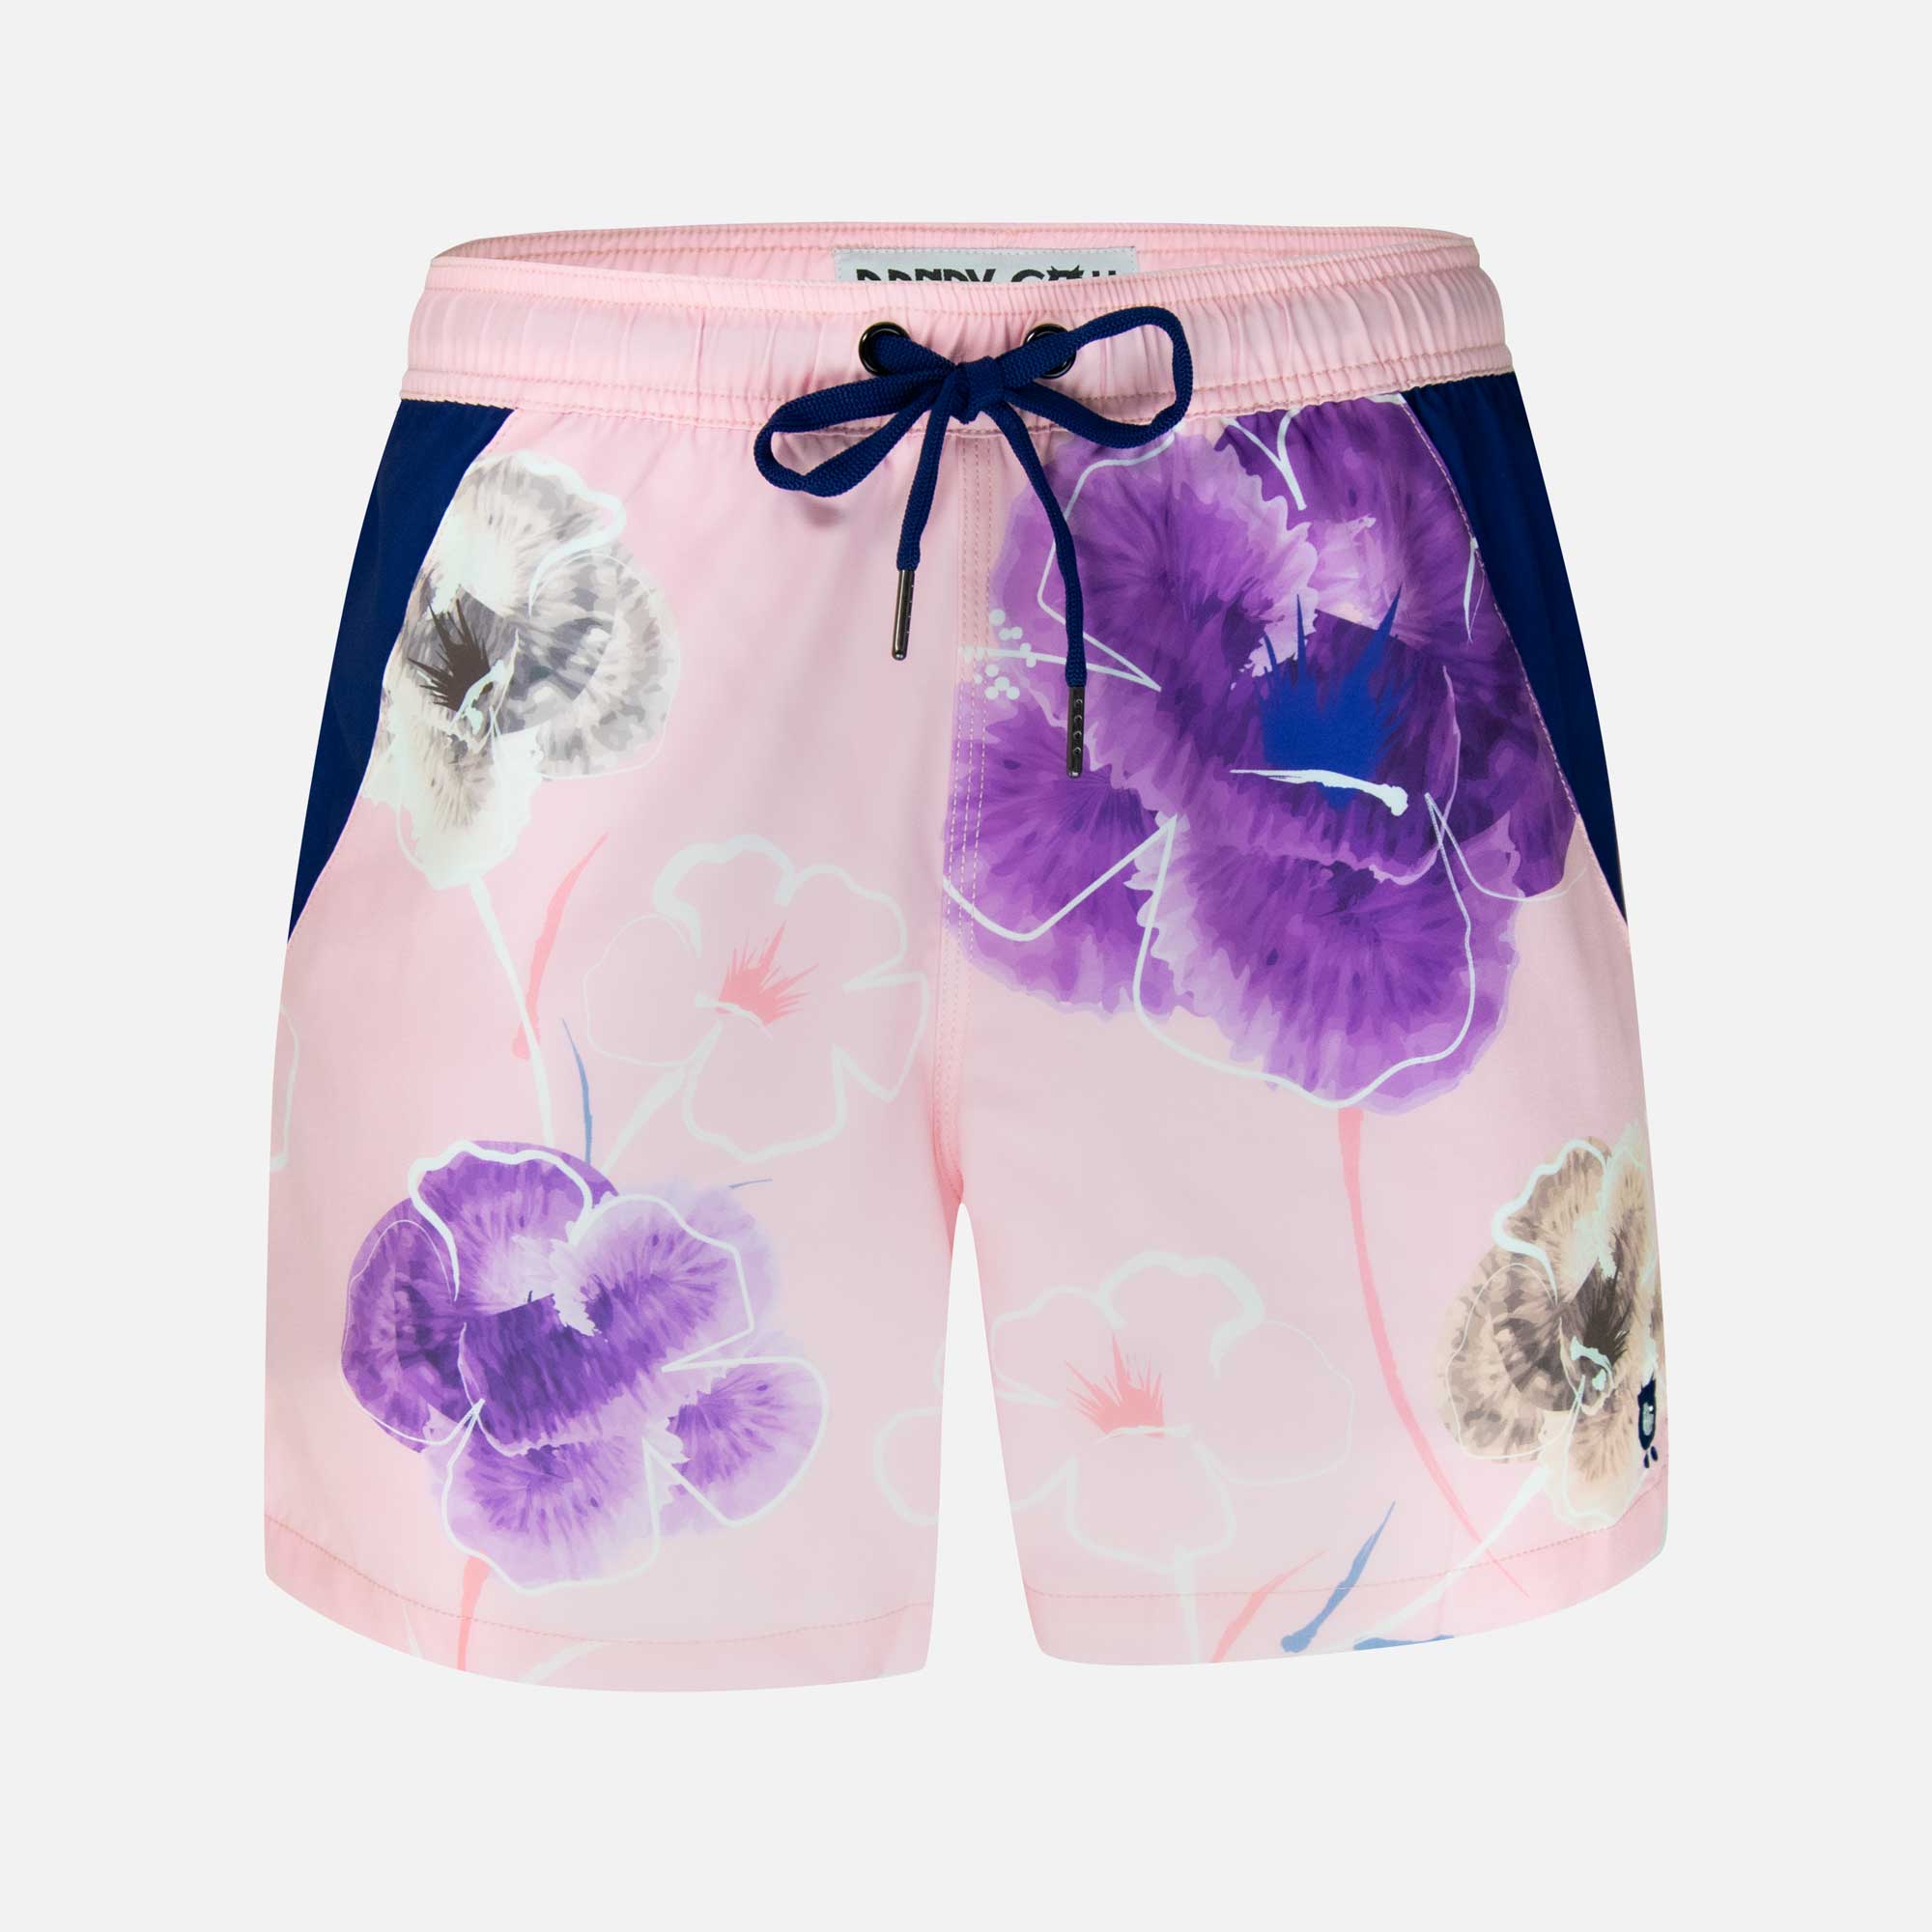 pink-floral-swim-shorts_74d1a257-d839-4450-971b-fc1c47f30d9f.jpg